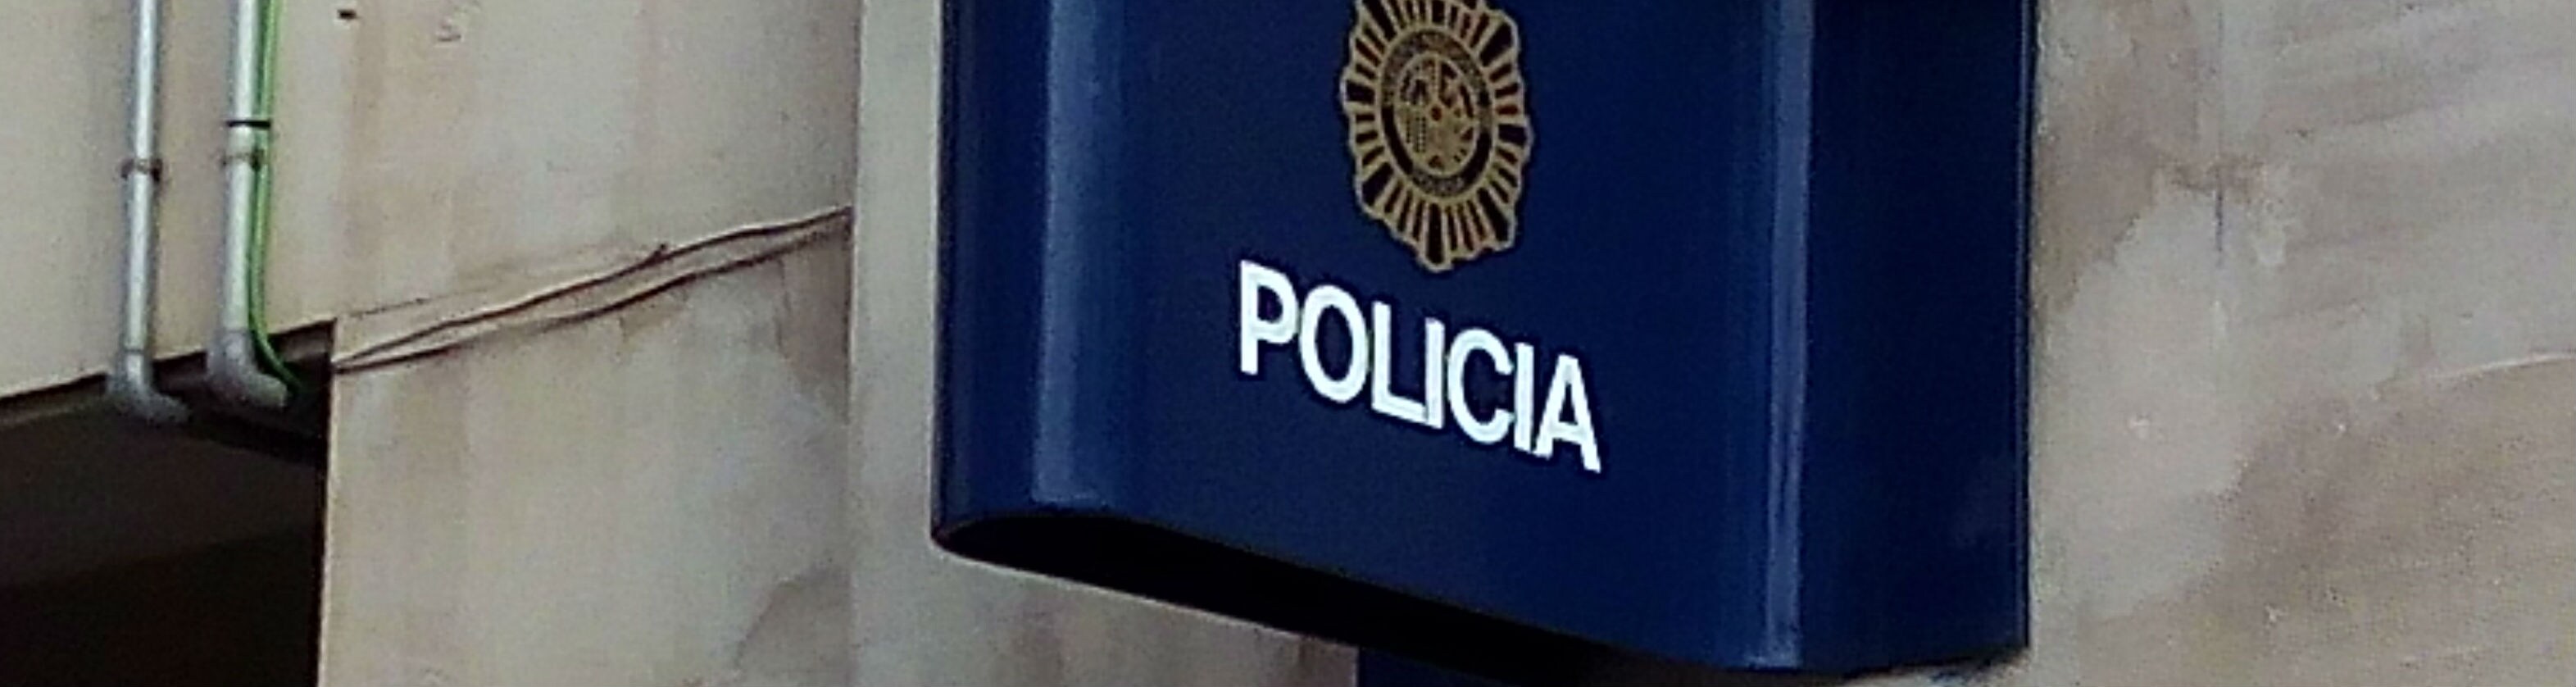 Comisaría Nacional de Policía de Jaén.